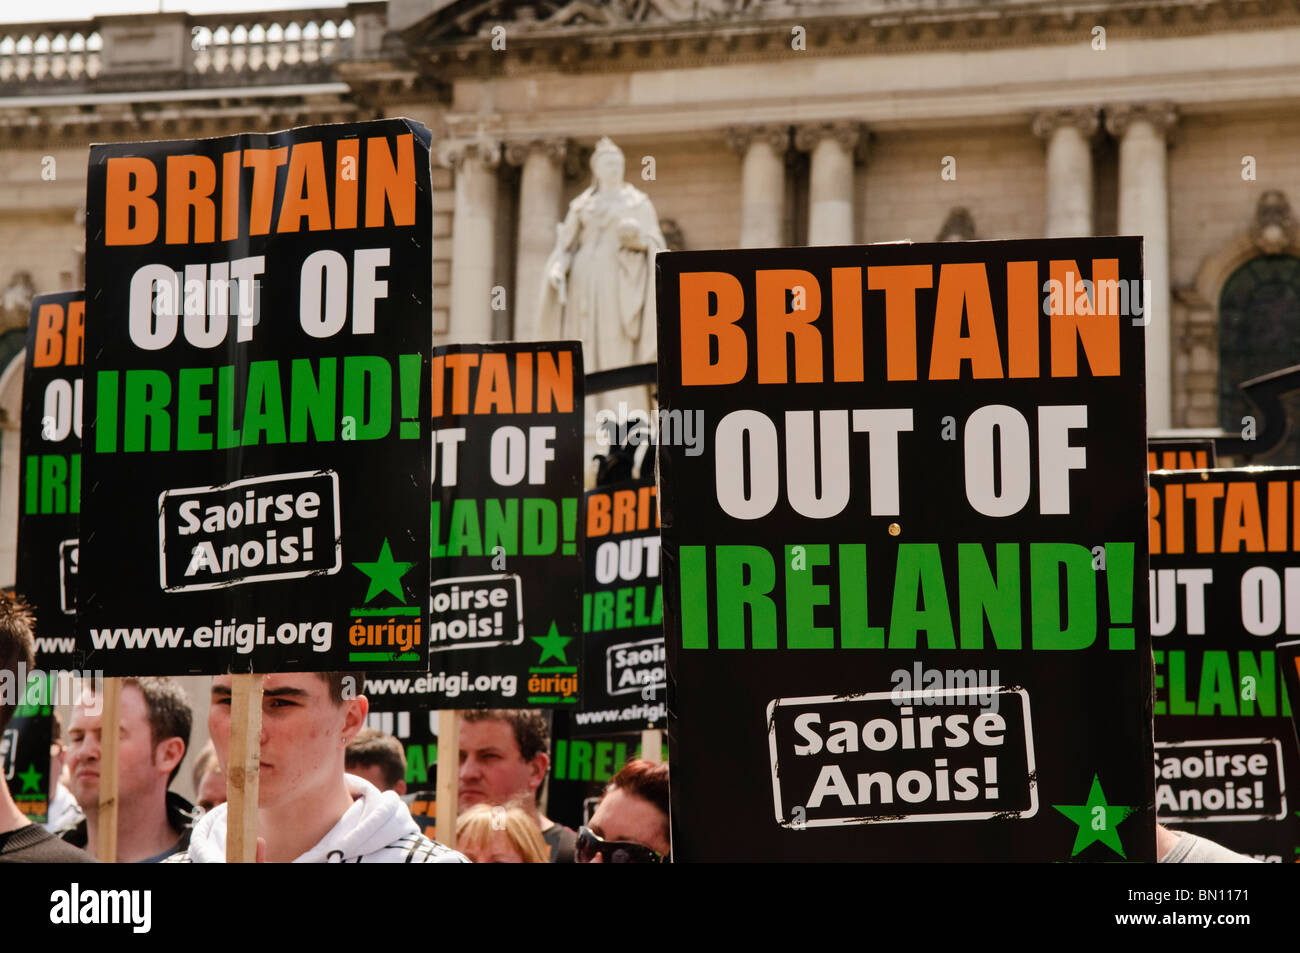 26 giugno 2010, Belfast. Eirigi, una protesta repubblicana gruppo, dimostra contro forze armate/la dominazione britannica in Irlanda del Nord Foto Stock